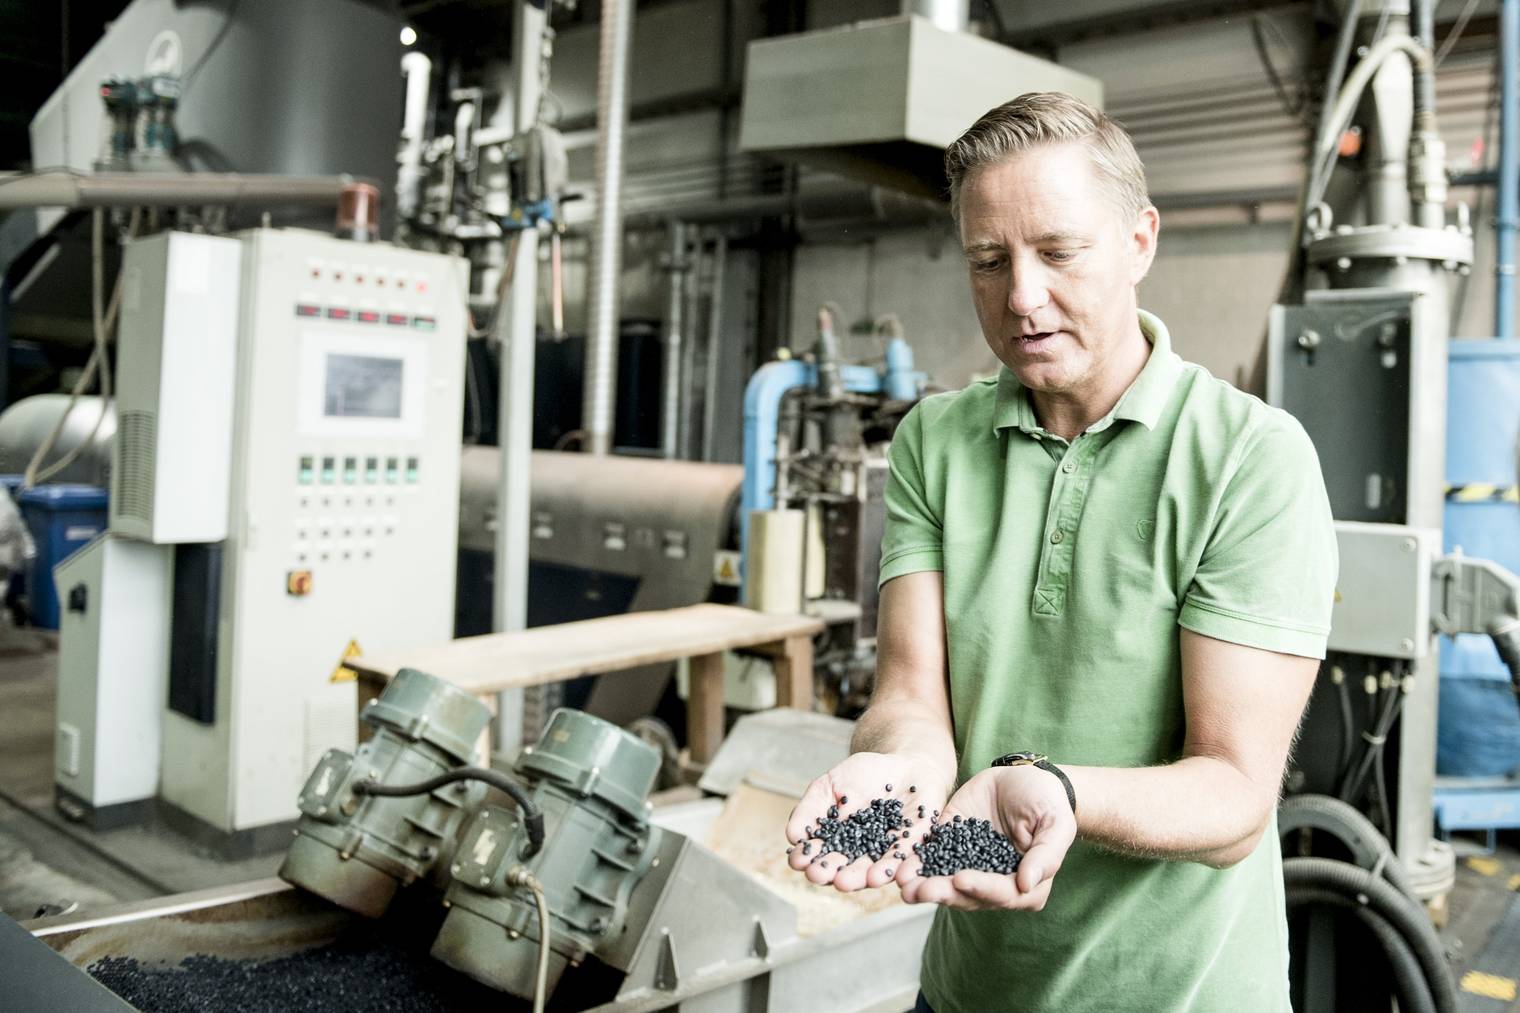 Plastikgranulat wird von Markus Tonner aus Plastikabfällen hergestellt. (Bild: Tagblatt/Mareycke Frehner)